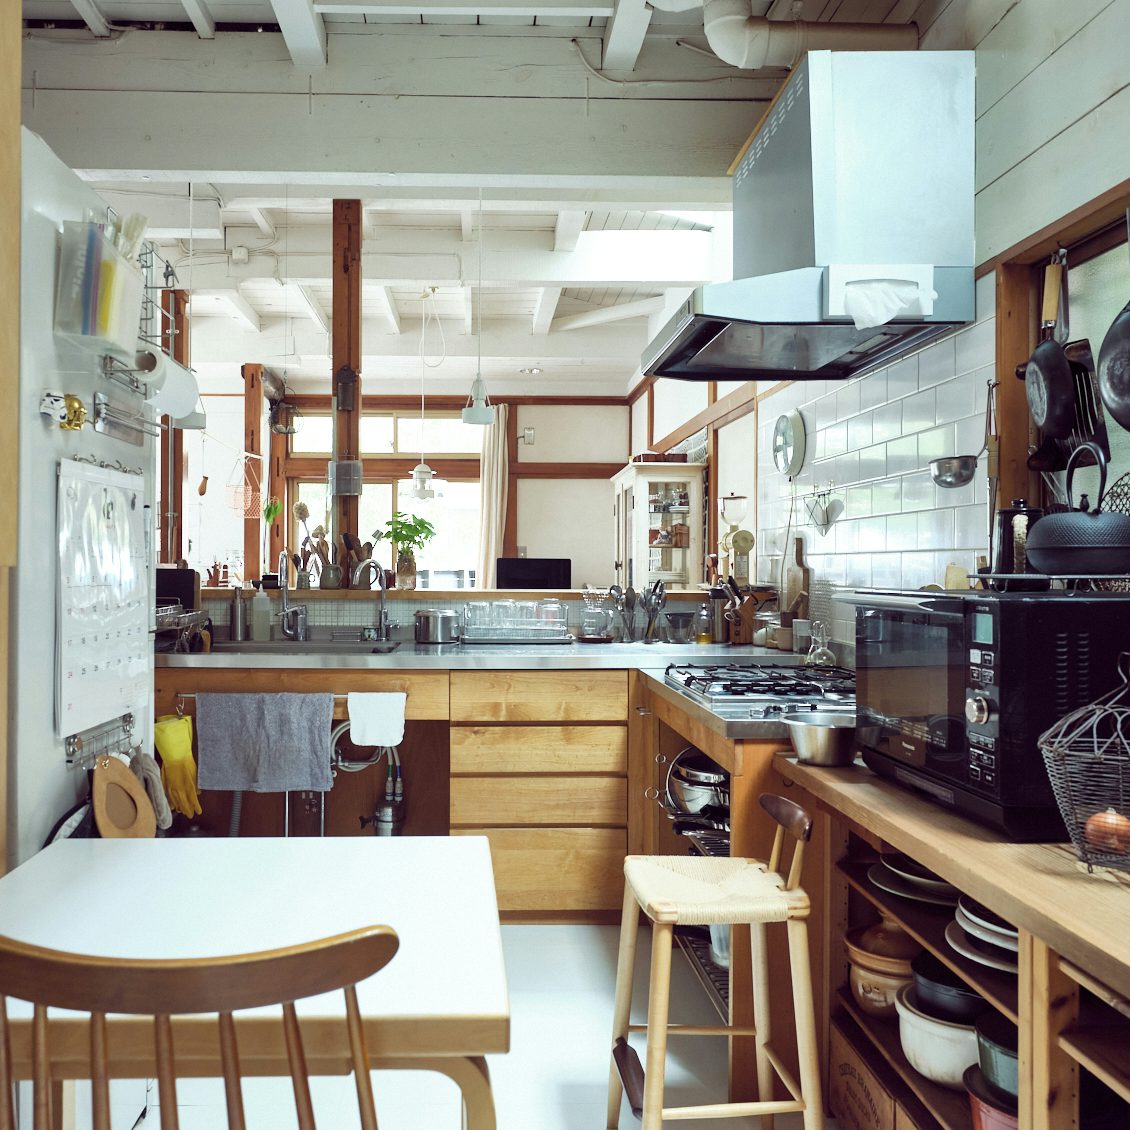 道具好きの台所 第2話 キッチンツールはどう選ぶ 台所道具店の店主愛用アイテム 北欧 暮らしの道具店